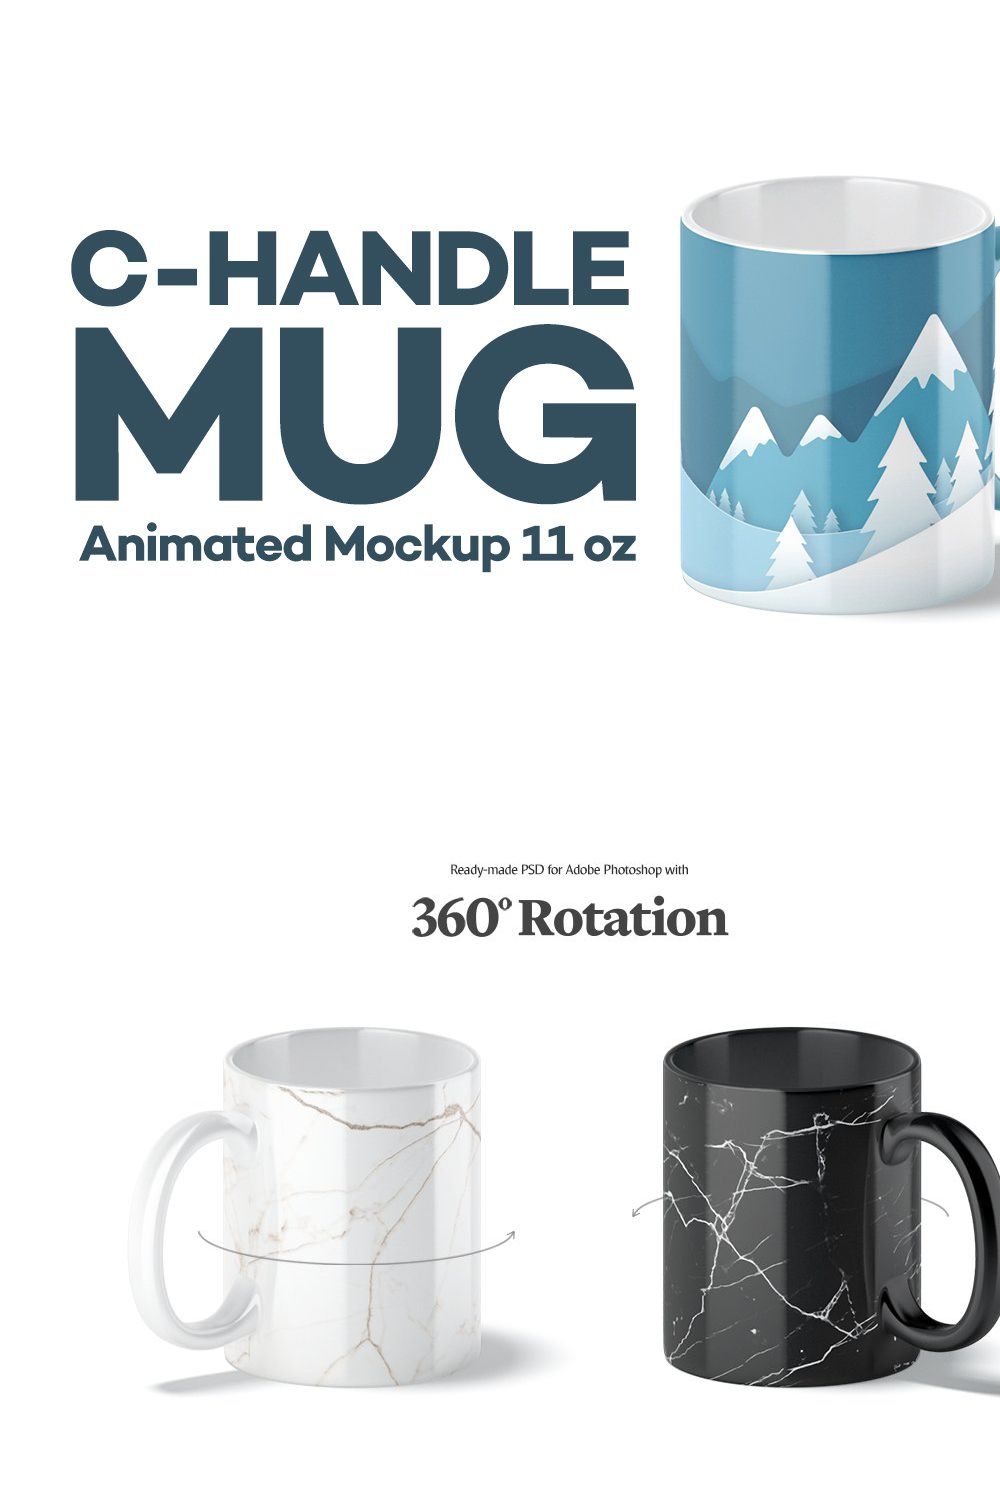 C-Handle Mug Animated Mockup 11oz pinterest preview image.